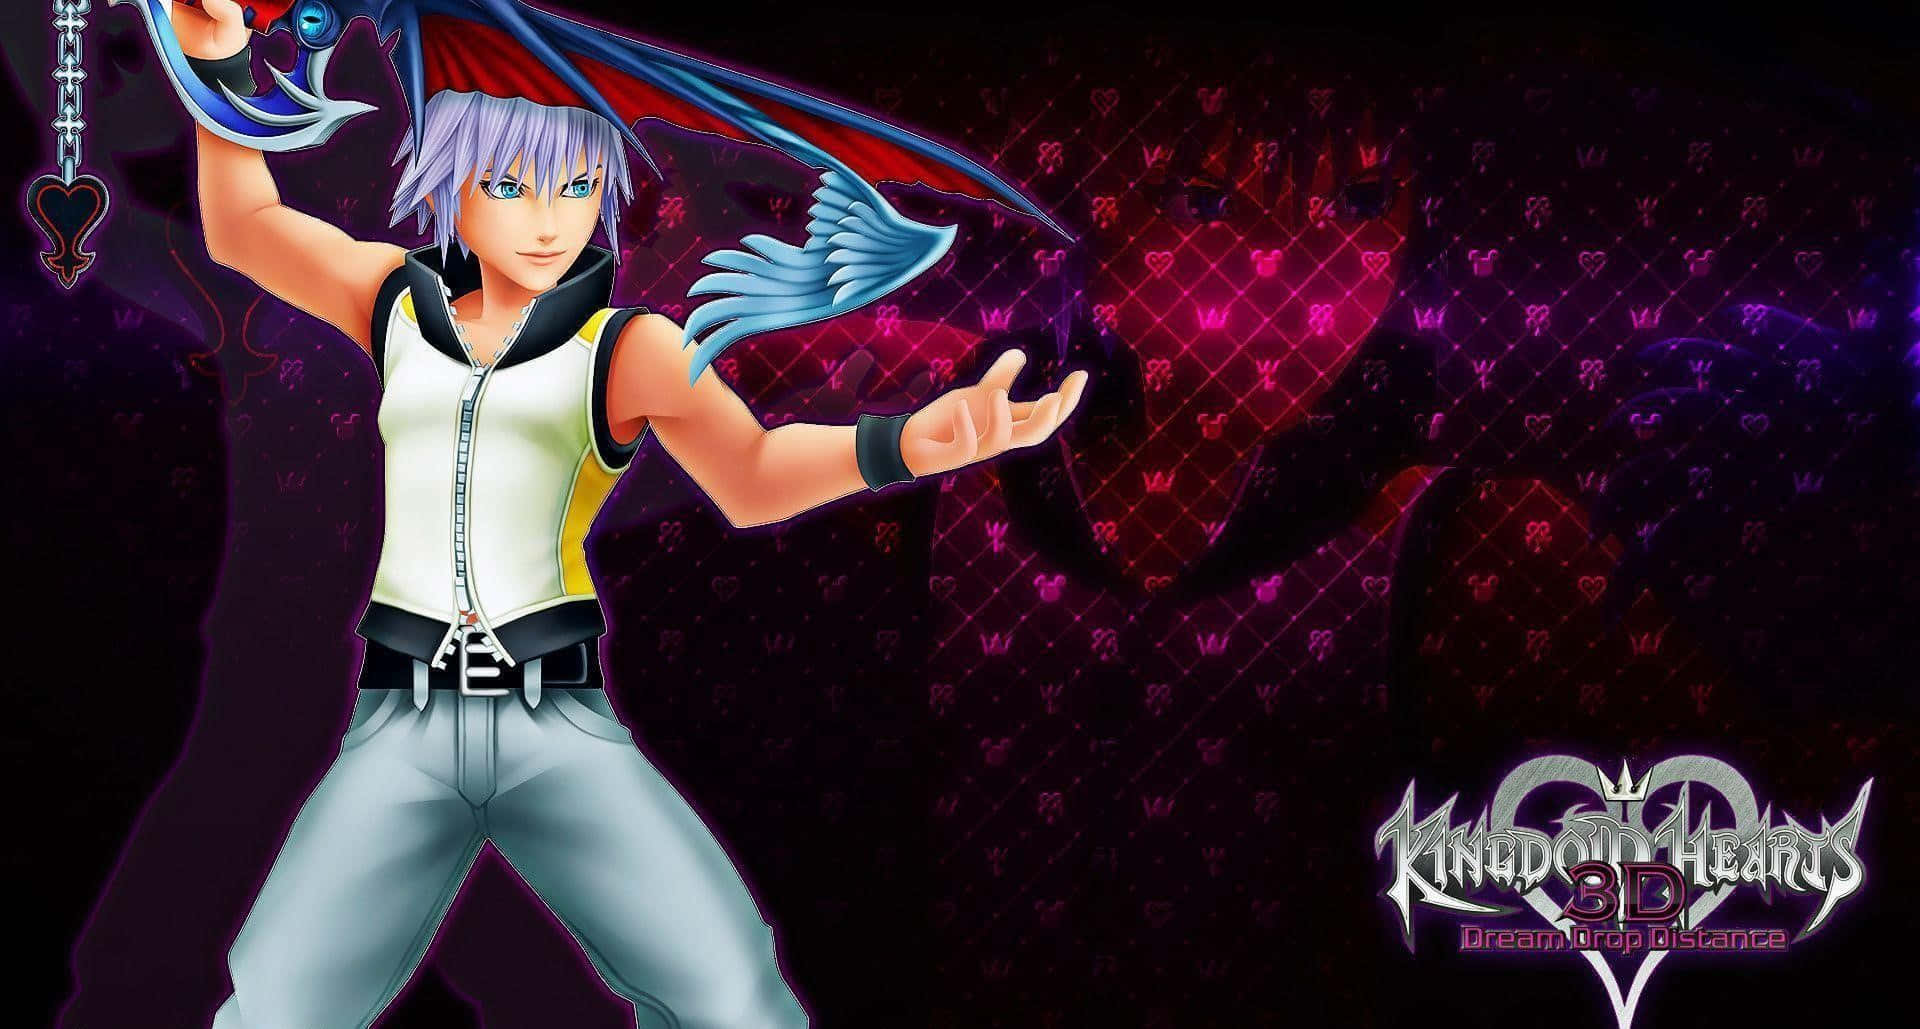 Riku wielding his powerful Keyblade in Kingdom Hearts Wallpaper